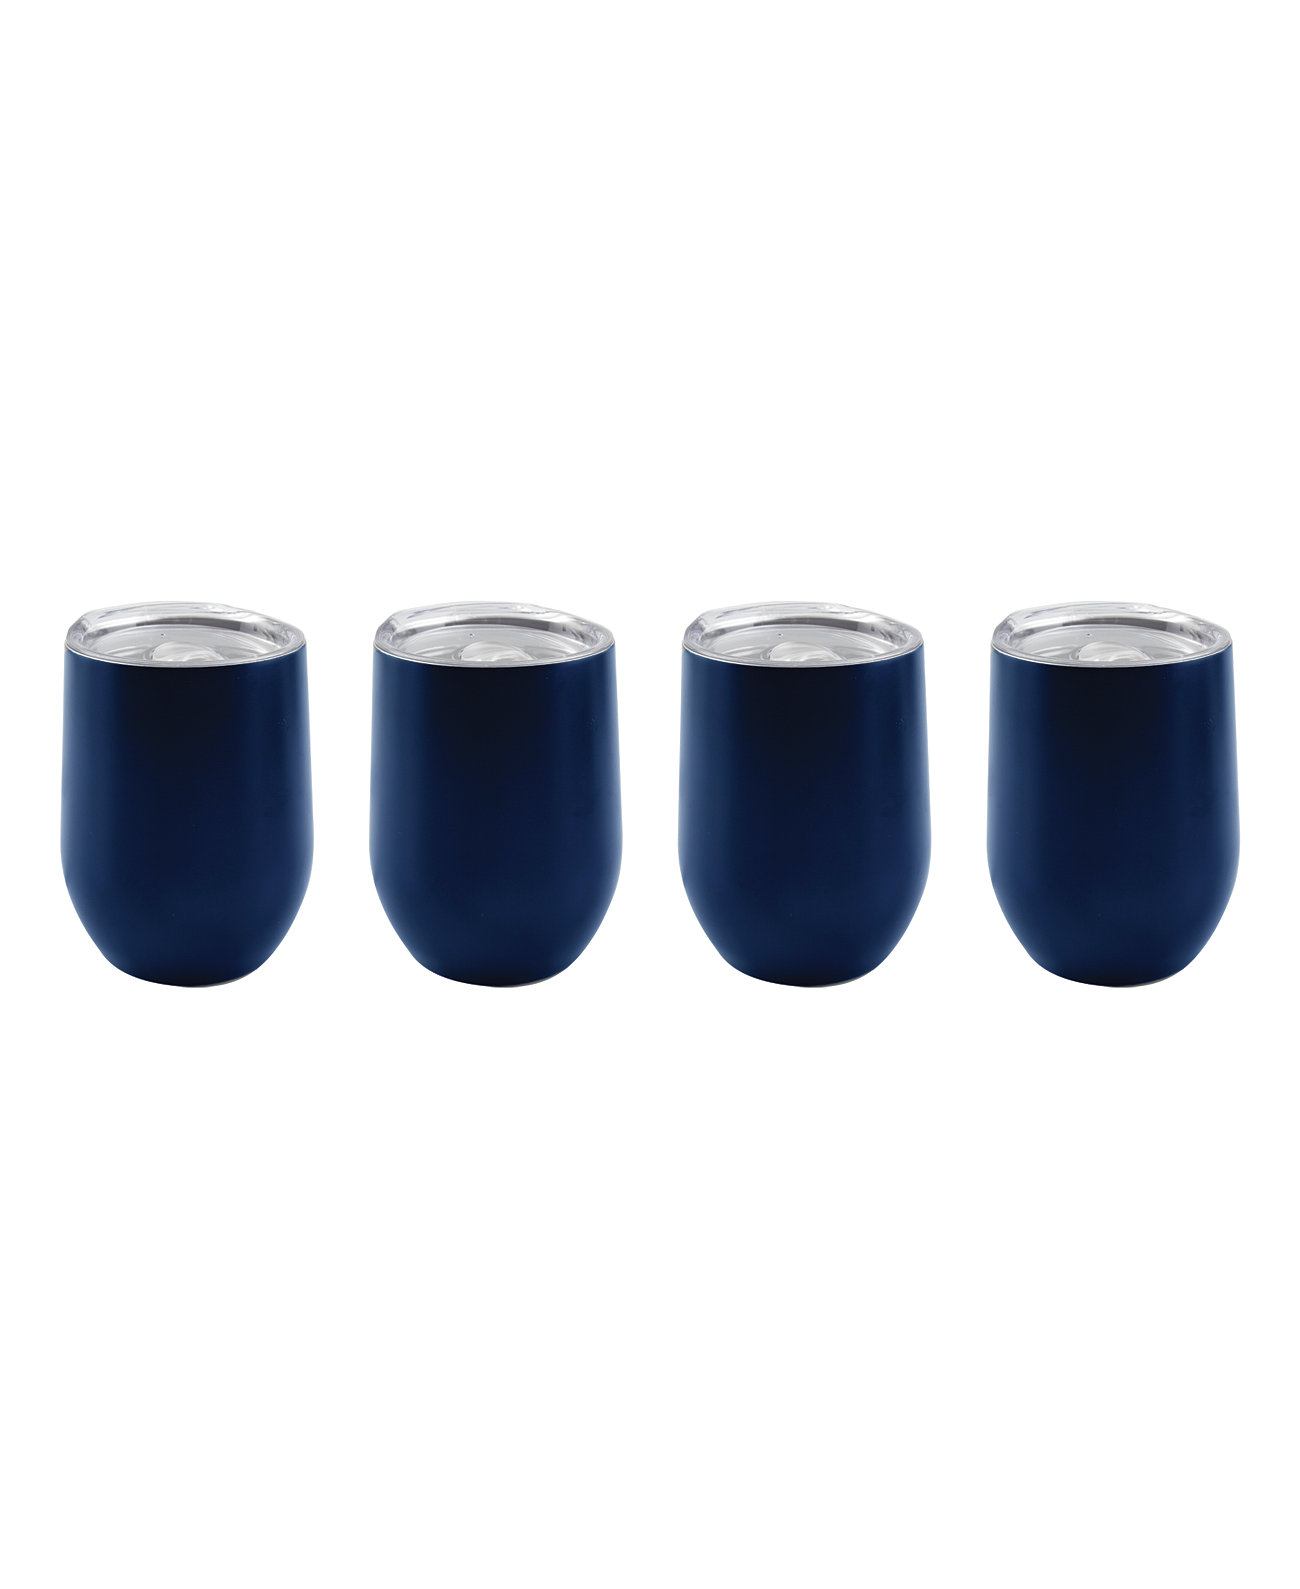 Изолированные темно-синие бокалы для вина на 12 унций, набор из 4 шт. Cambridge